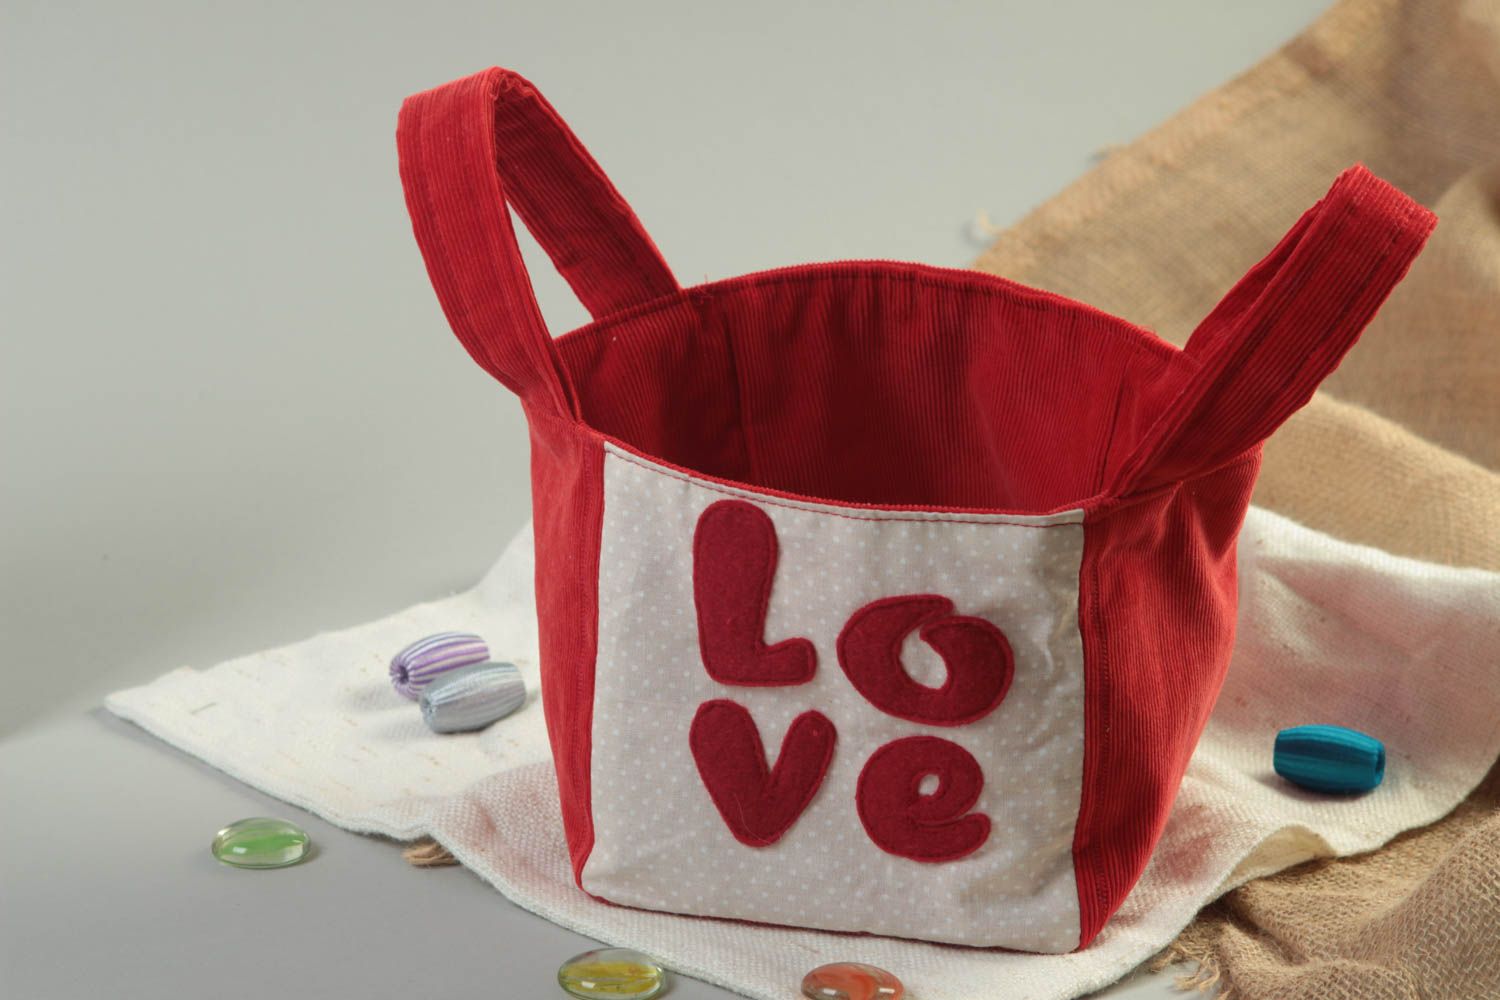 Мягкая корзина для игрушек красная с надписью Love из хлопка ручной работы фото 1